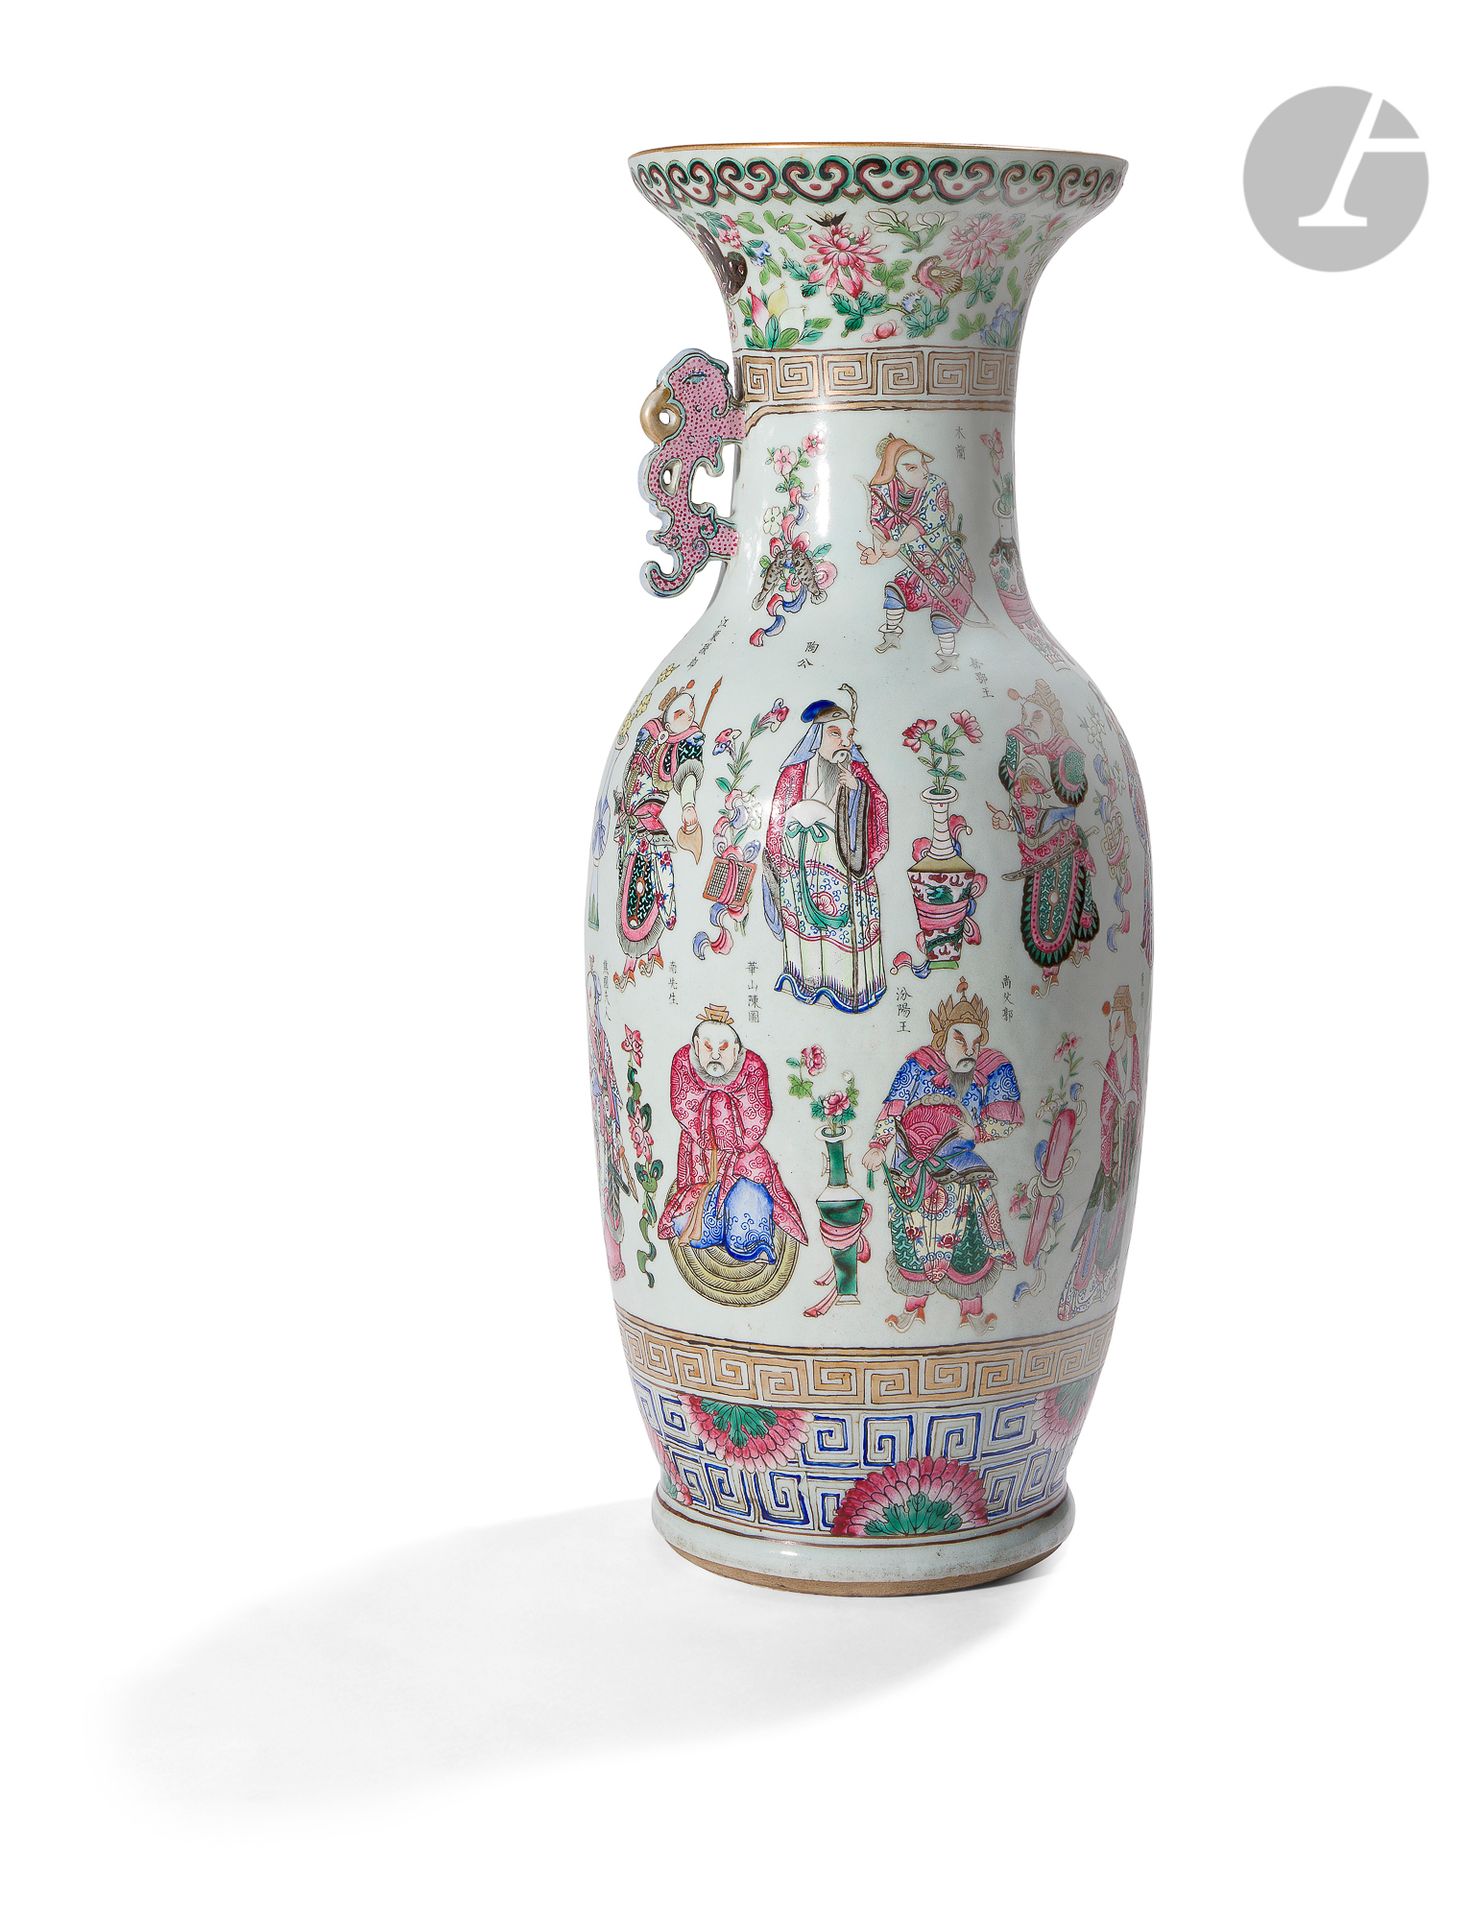 Null 珐琅彩大花瓶，中国，19
世纪
，
装饰有《无双图》中的各种人物
。
每个男性或女性角色都穿着精致的盔甲或长袍，并由左右两排字符来识别，彼此之间由花瓶&hellip;